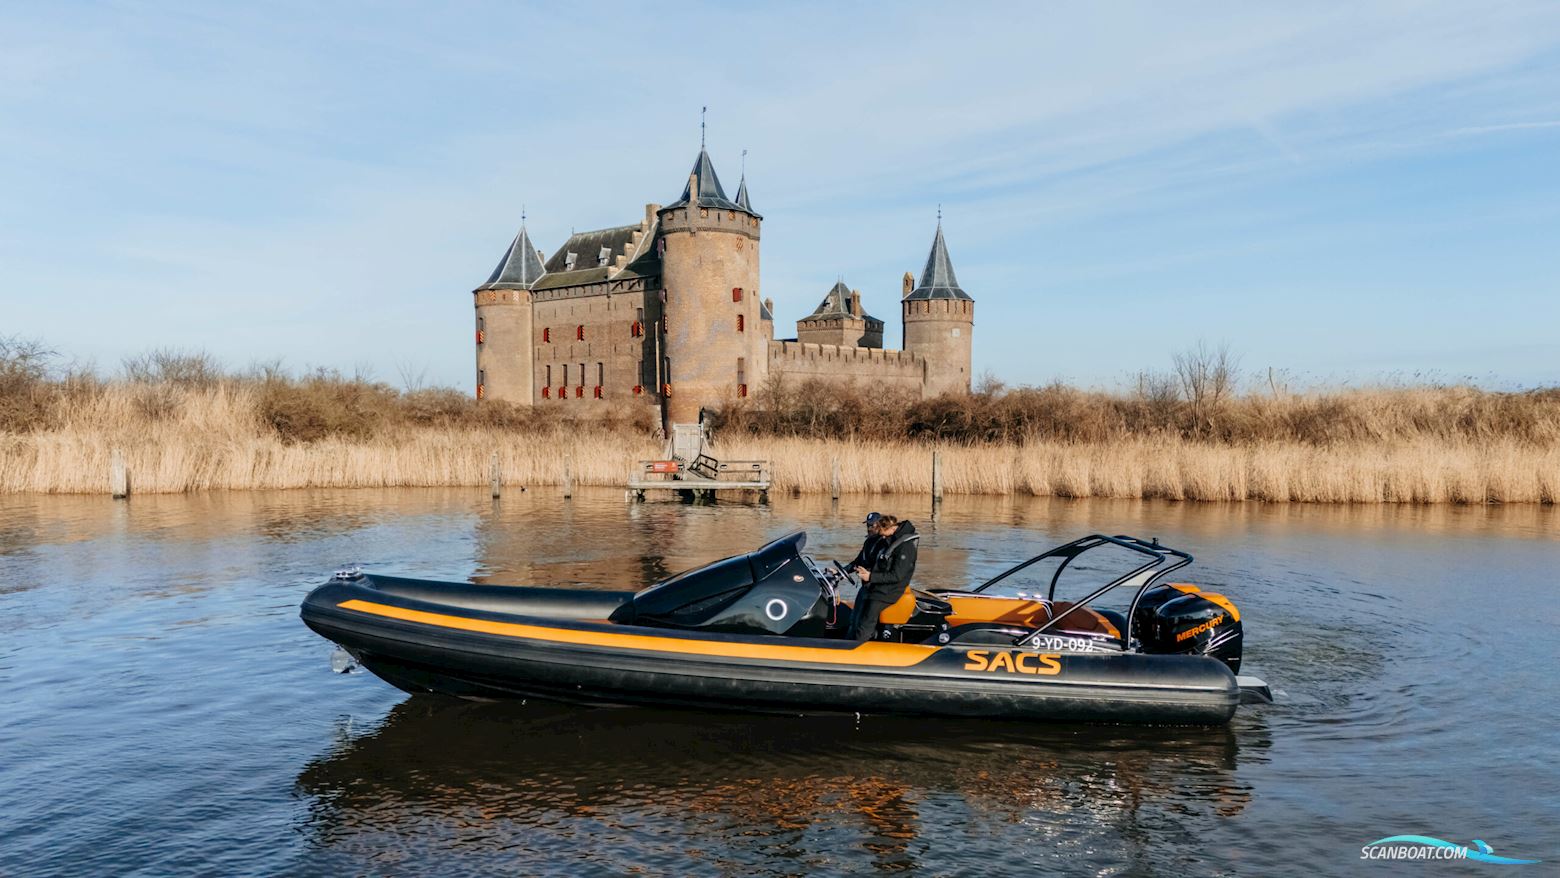 Sacs Strider 10 #50 Motor boat 2019, The Netherlands